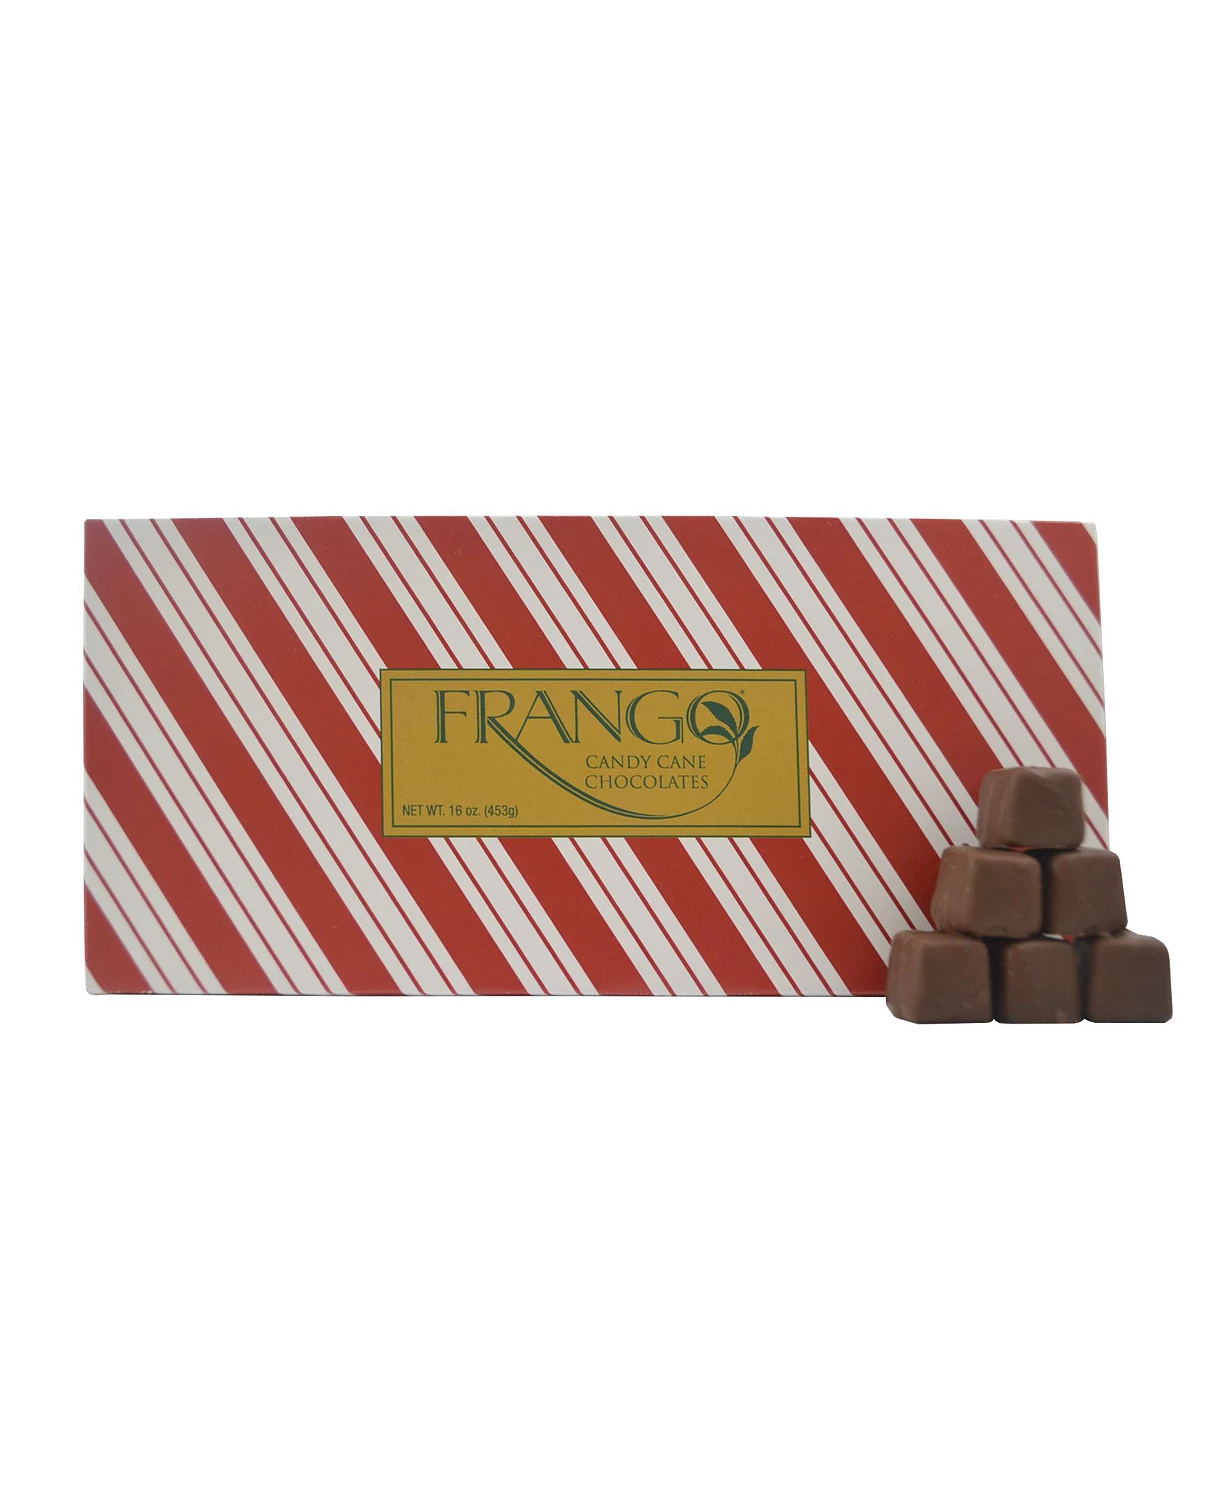 Chocolate & Candy Stocking Stuffers – 2021